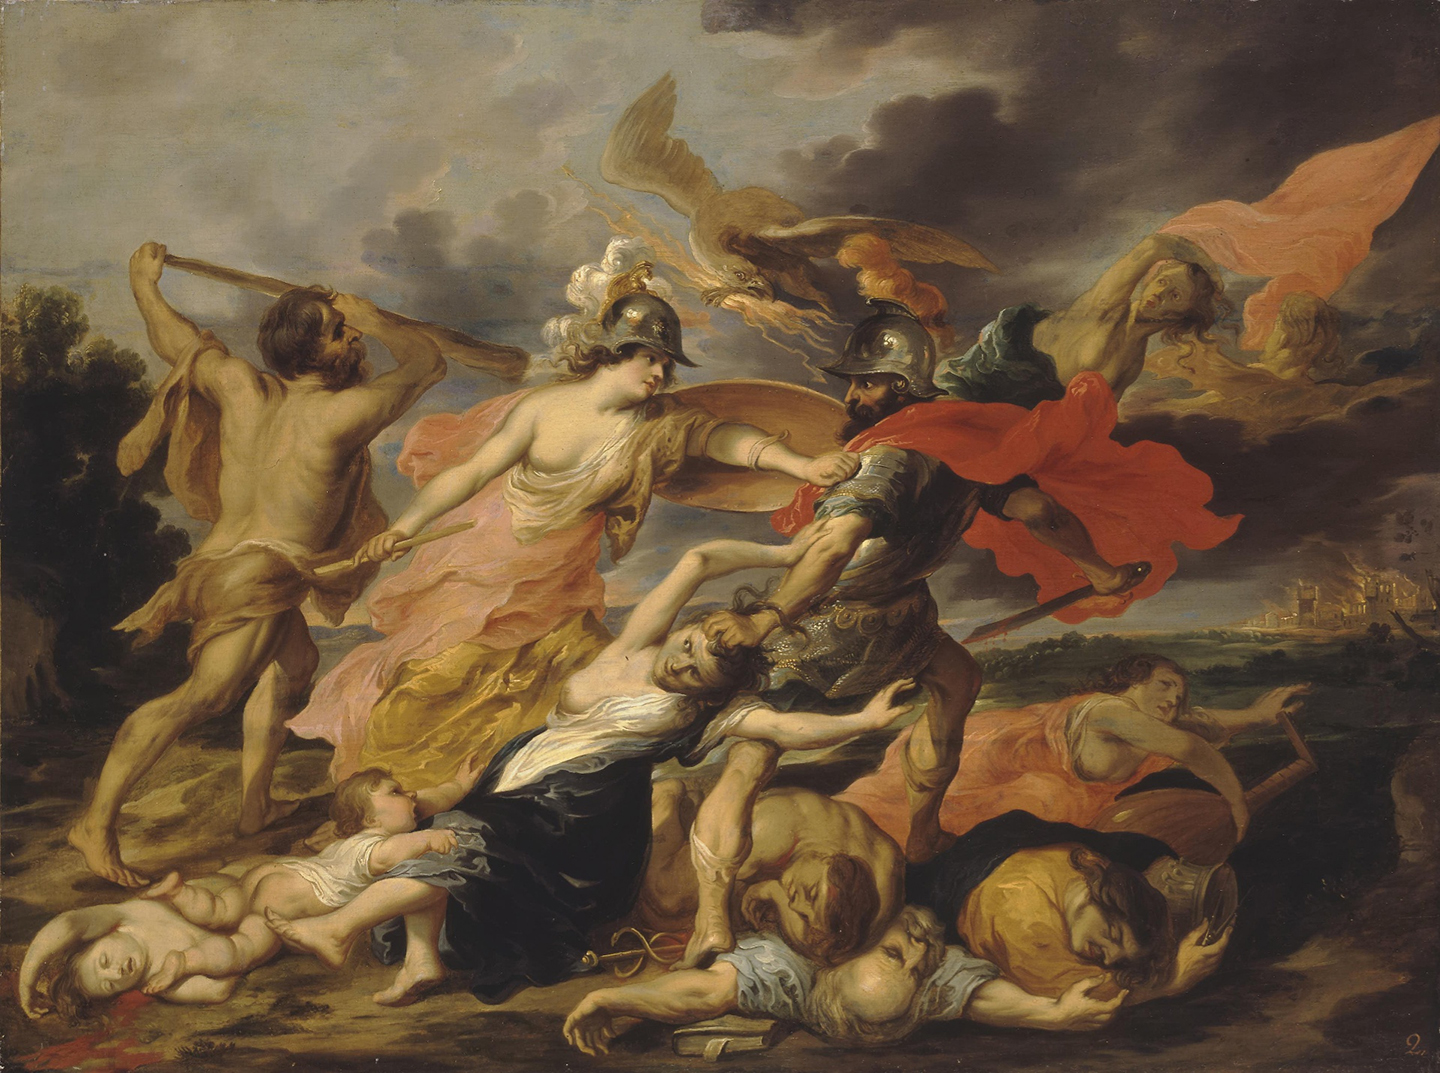 Anh hùng Heracles và Nữ thần Athena trục xuất Thần Ares trong bức “Allegory of War” (Truyện ngụ ngôn về chiến tranh), họa sỹ Victor Wolfvoet, giữa năm 1630 và năm 1640. Tranh sơn dầu trên vải canvas. Bảo tàng Hermitage, Saint Petersburg. (Ảnh: Tư liệu công cộng)